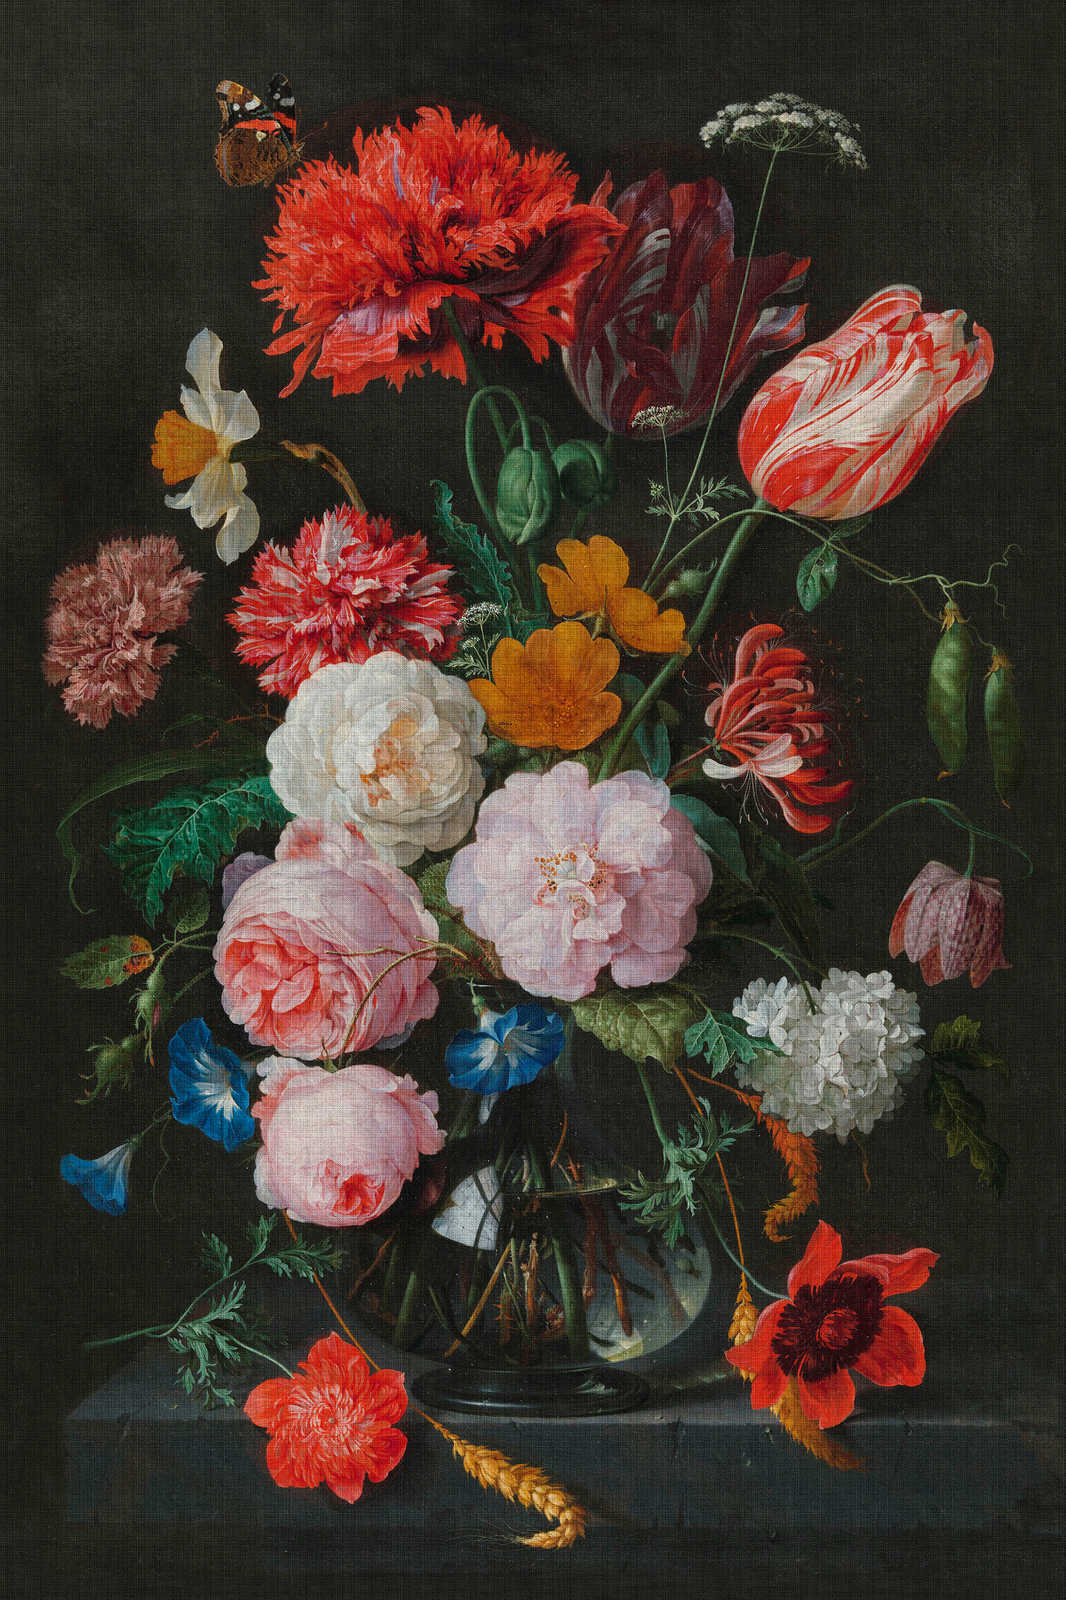             Artists Studio 4 - Leinwandbild Blumen Stillleben mit Rosen – 0,80 m x 1,20 m
        